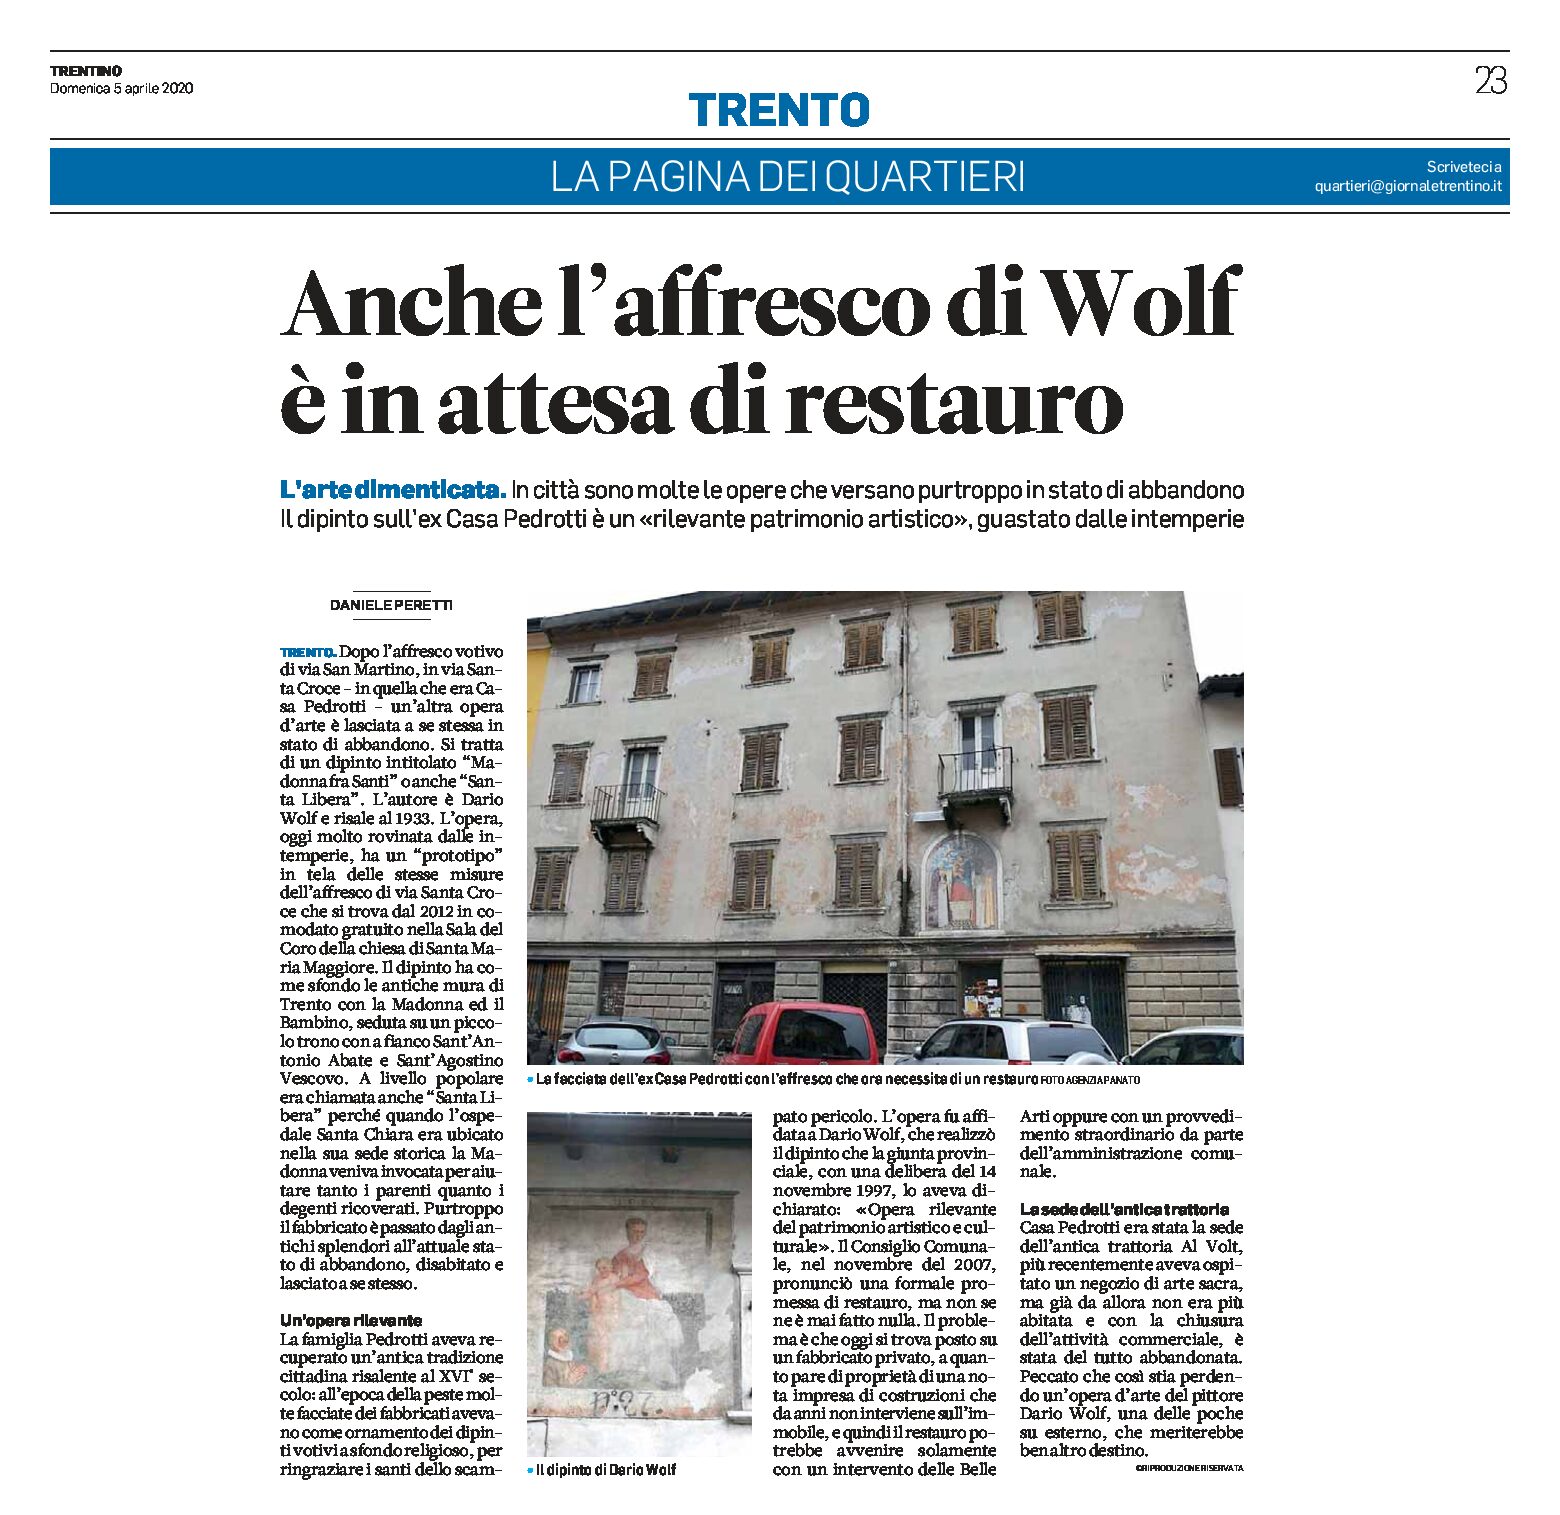 Trento: anche l’affresco di Wolf è in attesa di restauro